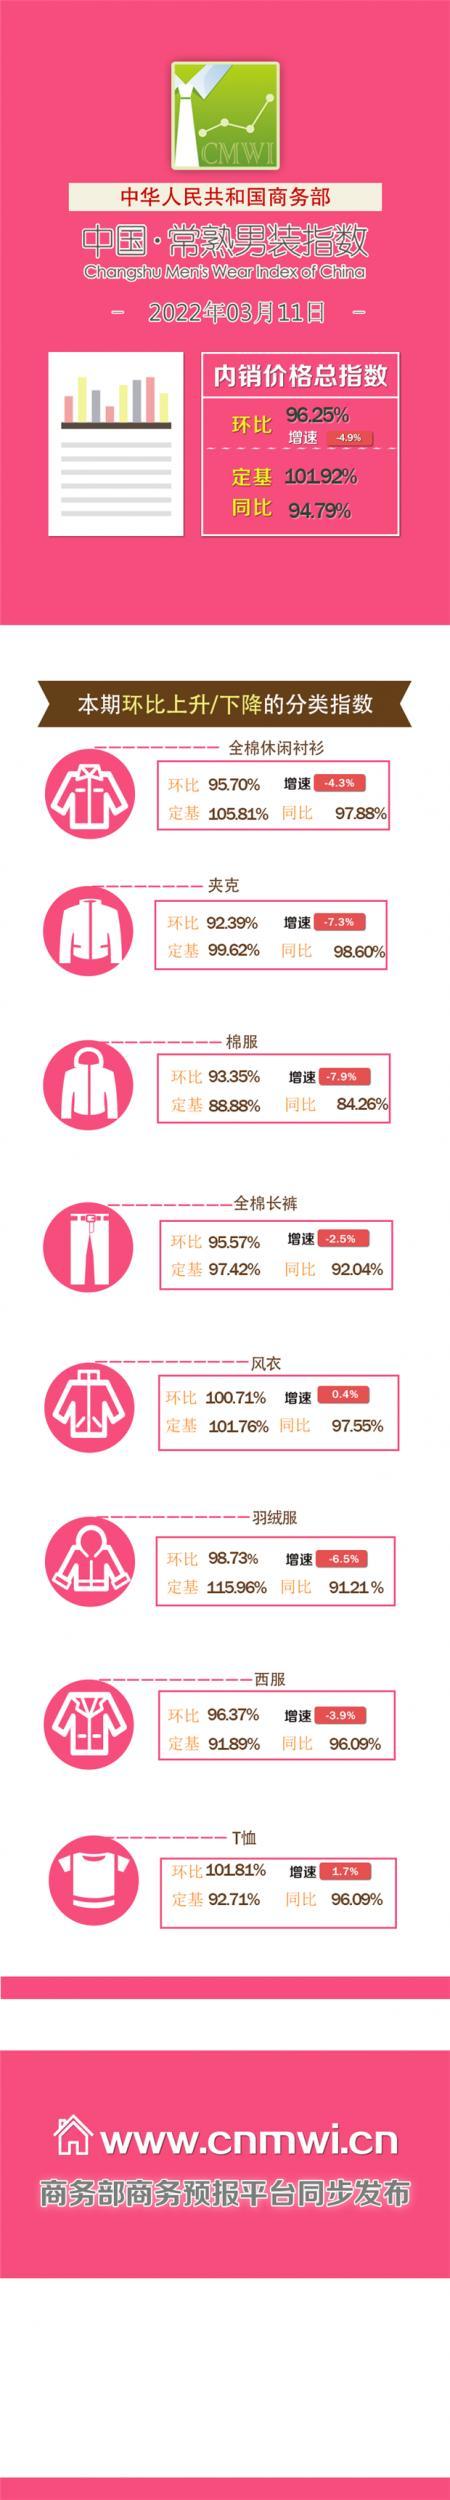 3月1旬中国·常熟男装内销价格指数发布